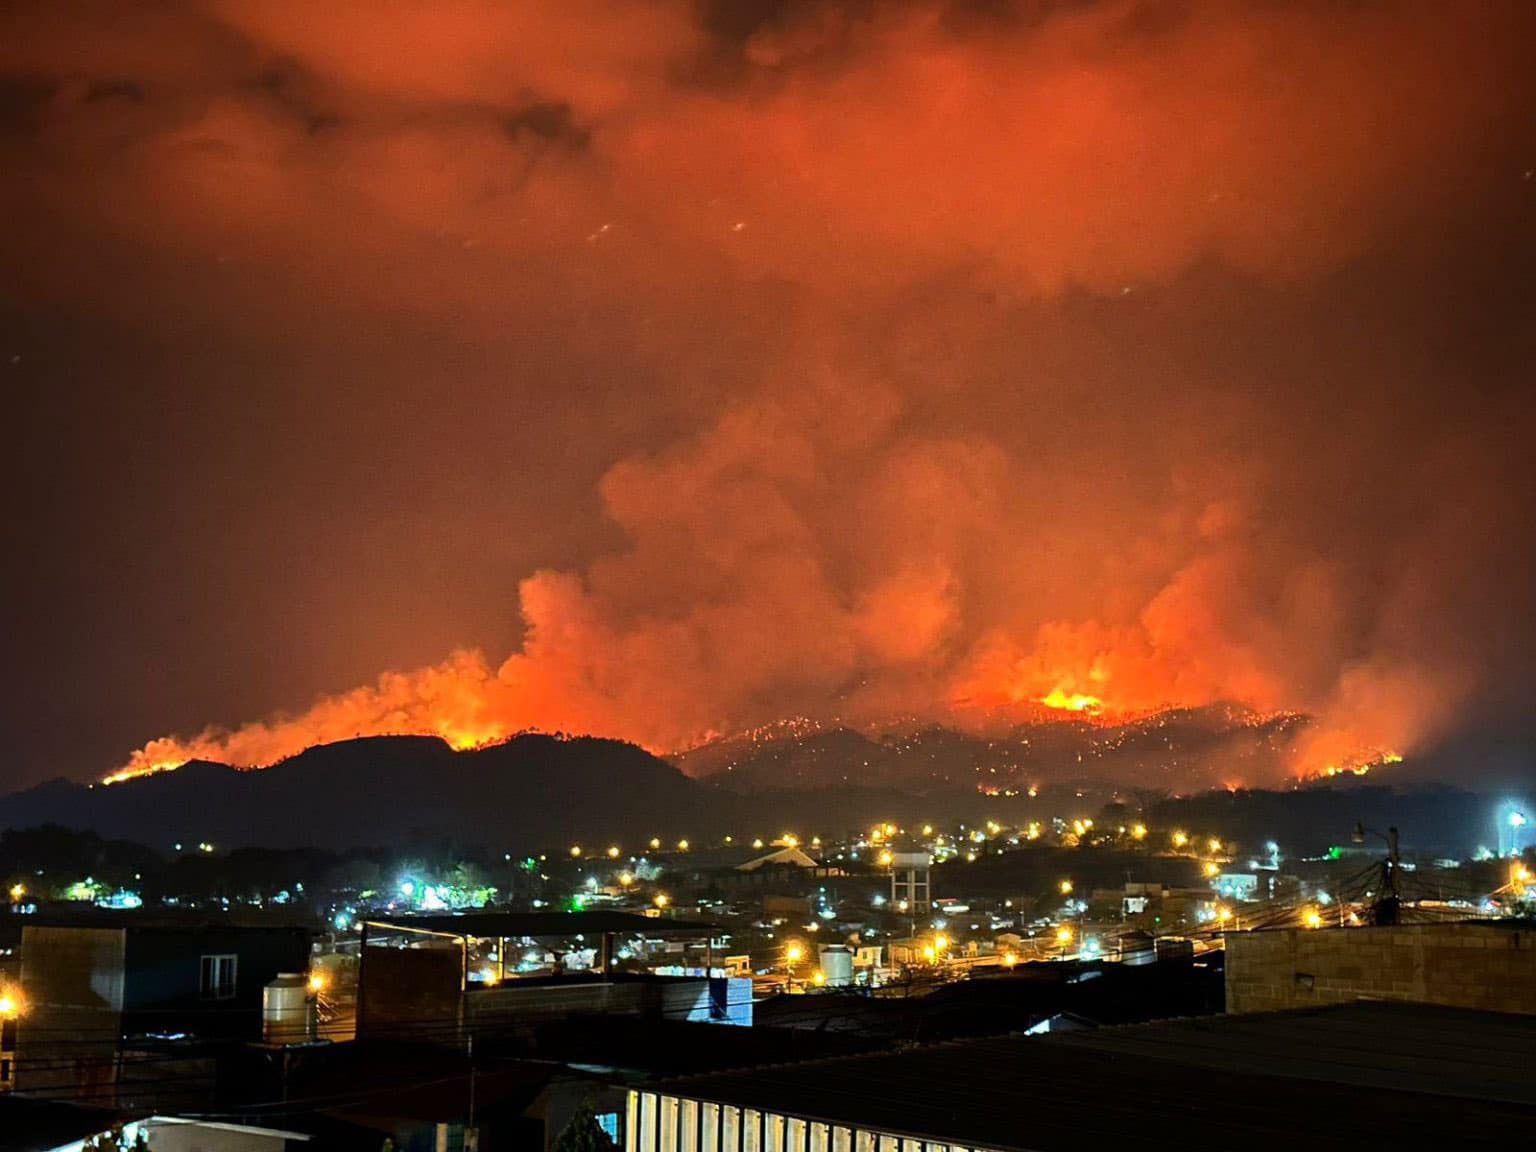 Presidenta Xiomara Castro insta a sancionar a responsables del incendio en La Tigra